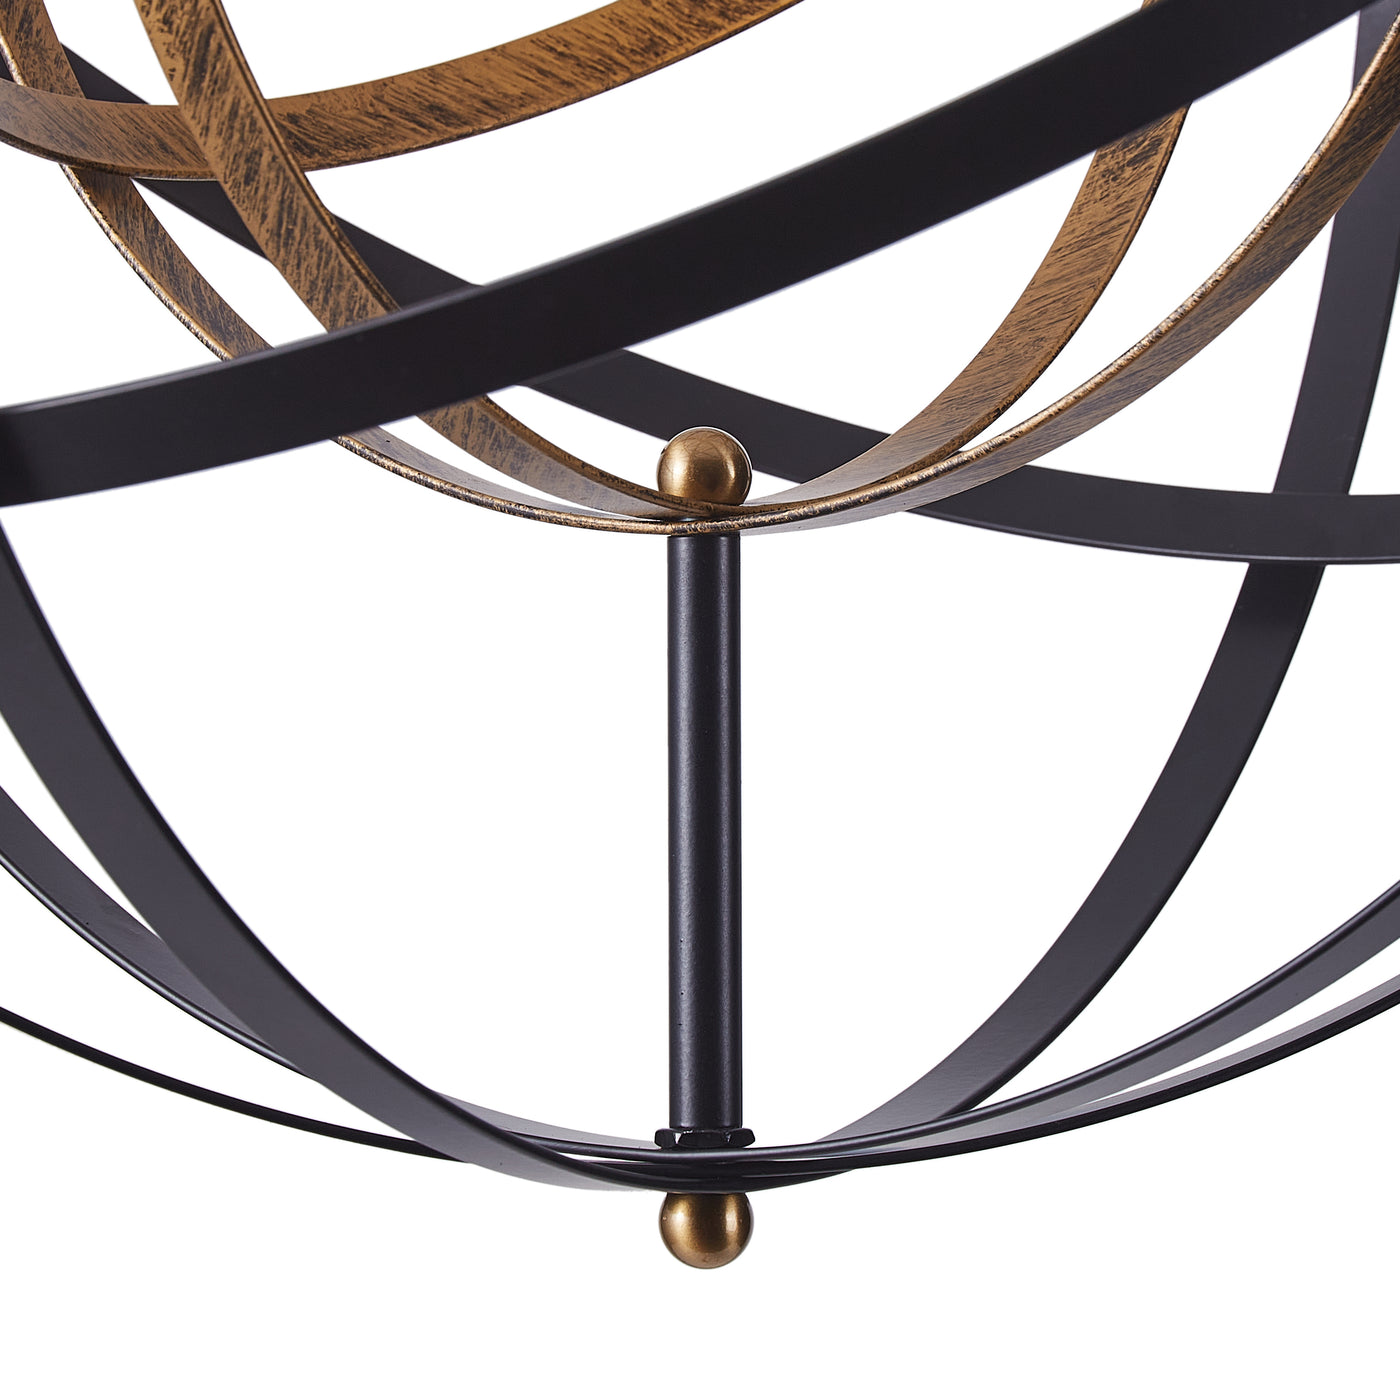 1-Light Unique Globe Design Chandelier